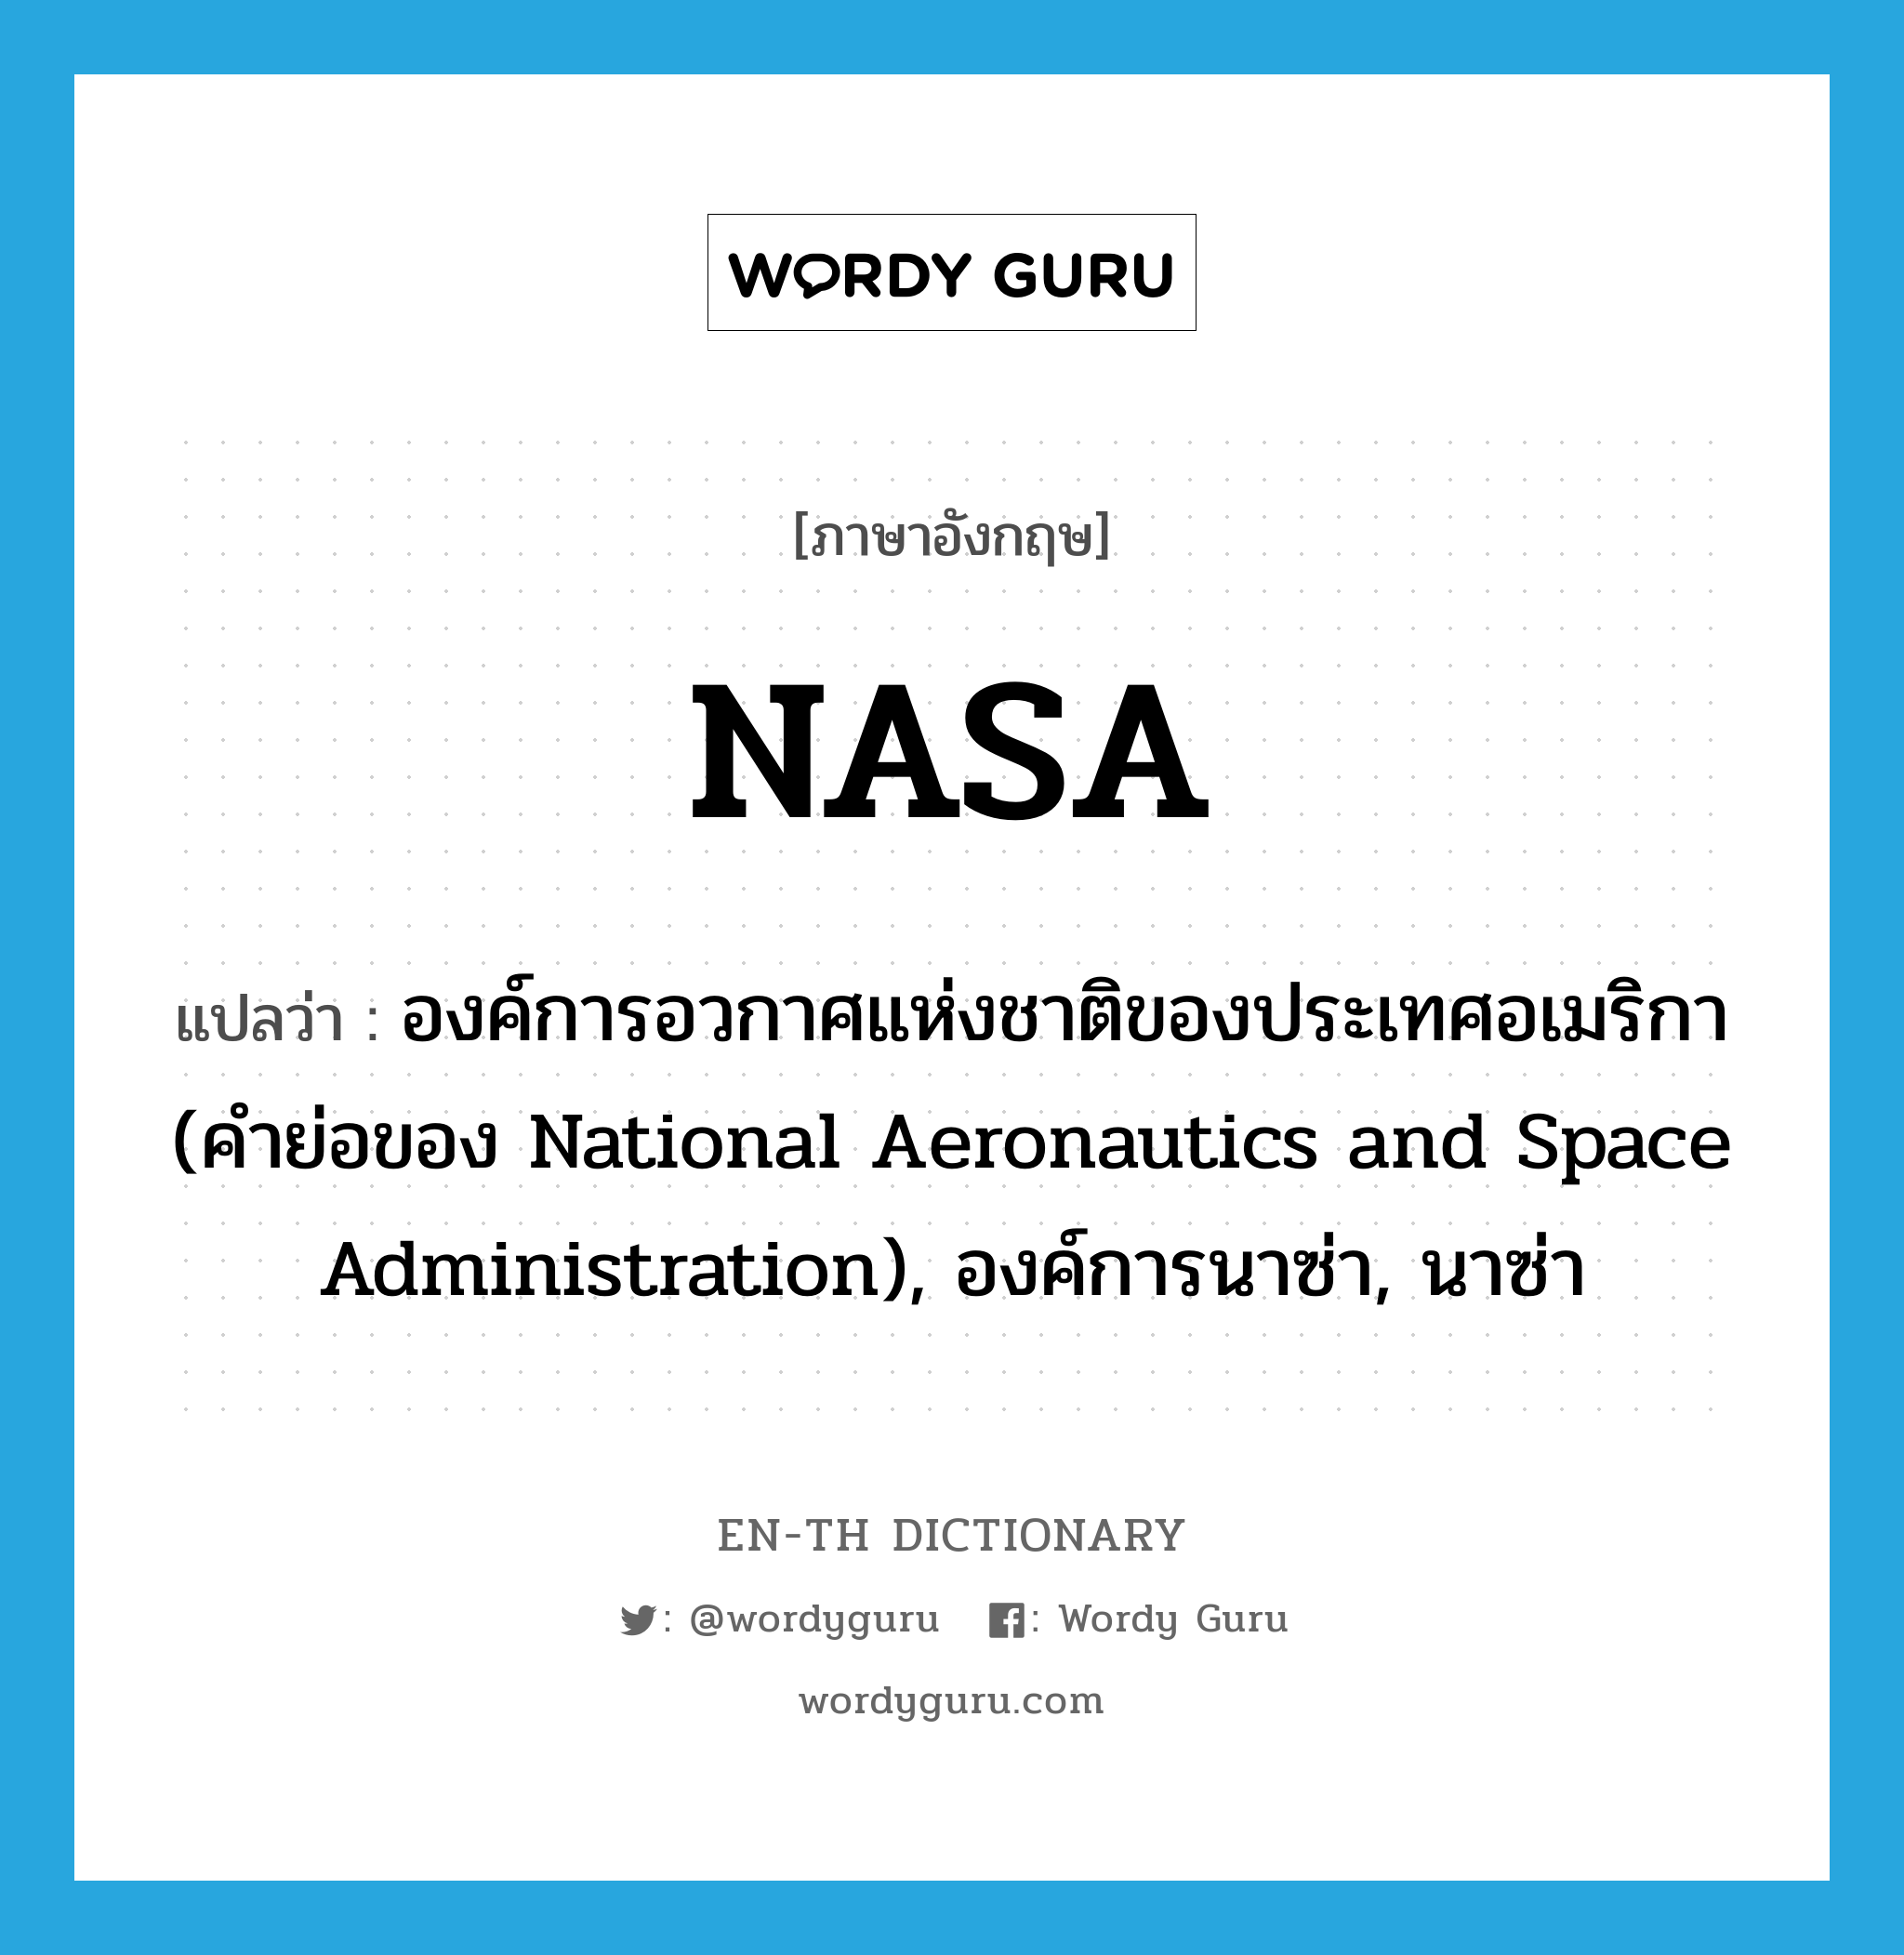 องค์การอวกาศแห่งชาติของประเทศอเมริกา (คำย่อของ National Aeronautics and Space Administration), องค์การนาซ่า, นาซ่า ภาษาอังกฤษ?, คำศัพท์ภาษาอังกฤษ องค์การอวกาศแห่งชาติของประเทศอเมริกา (คำย่อของ National Aeronautics and Space Administration), องค์การนาซ่า, นาซ่า แปลว่า NASA ประเภท ABBR หมวด ABBR